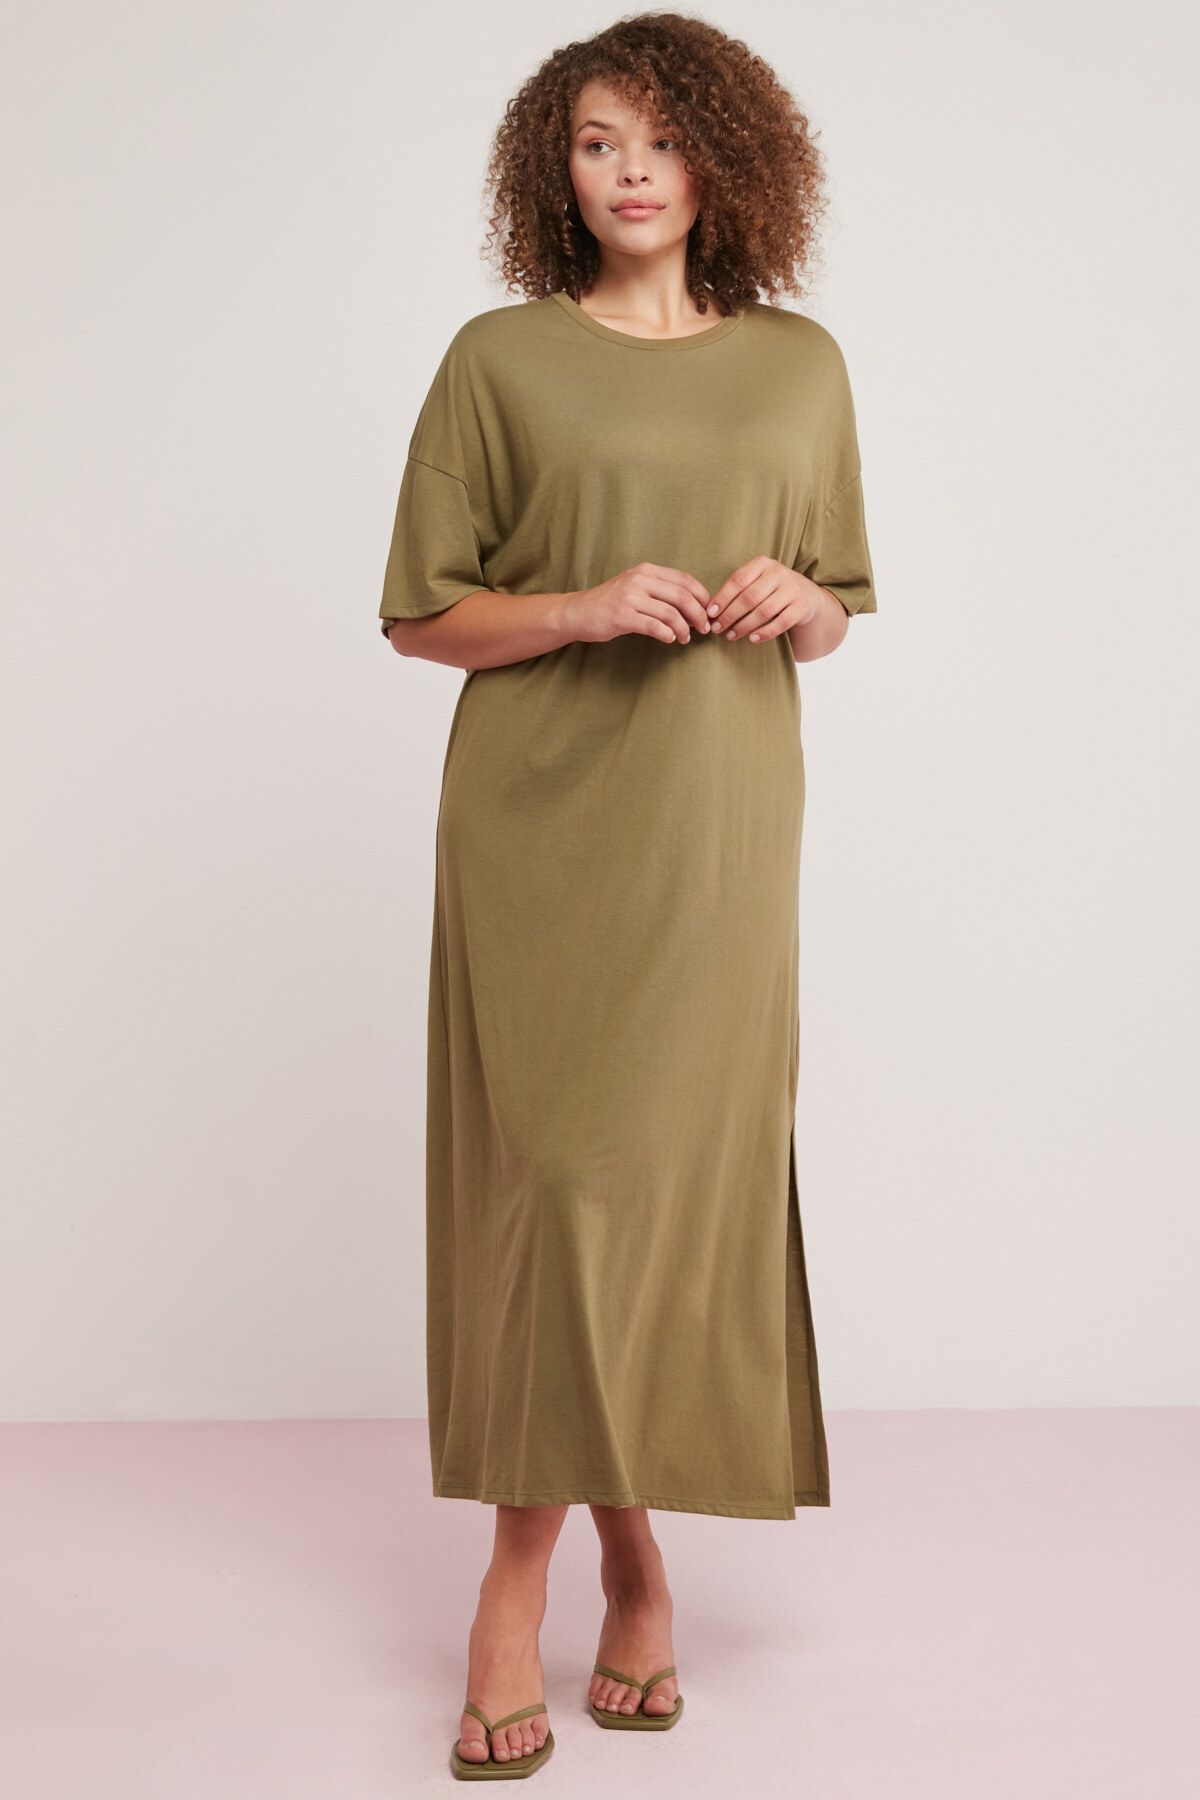 ETHIQUET Morganne Kadın 100% Pamuk Dökümlü Yarasa Kol Yırtmaçlı Comfort Fit Haki Büyük Beden Elbise